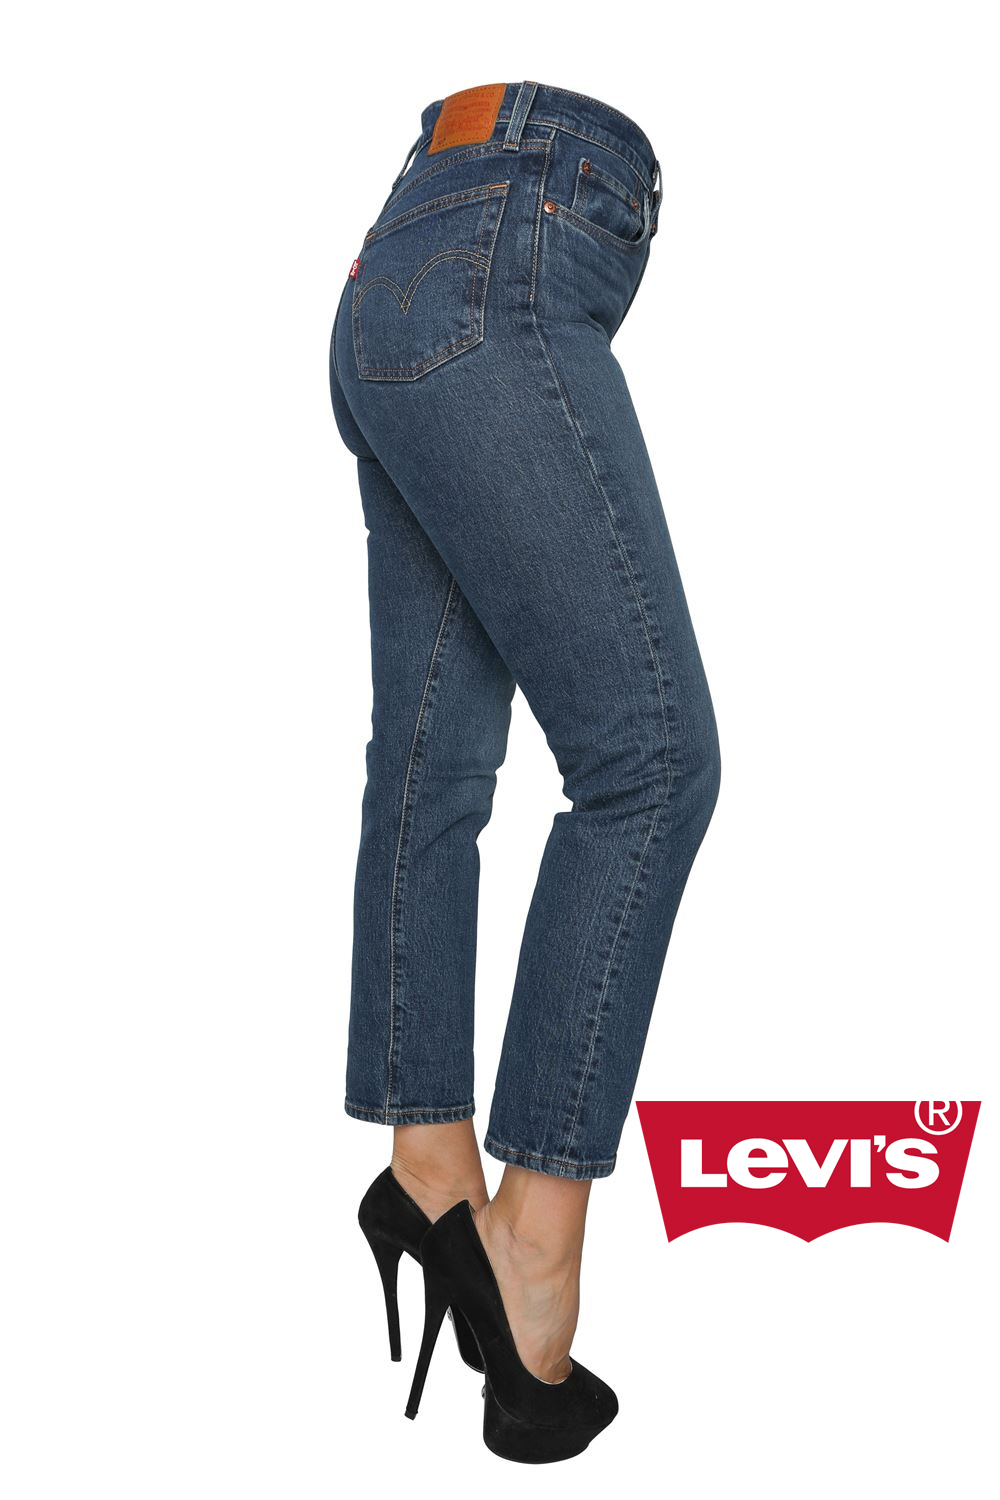 501 Crop levis jeans